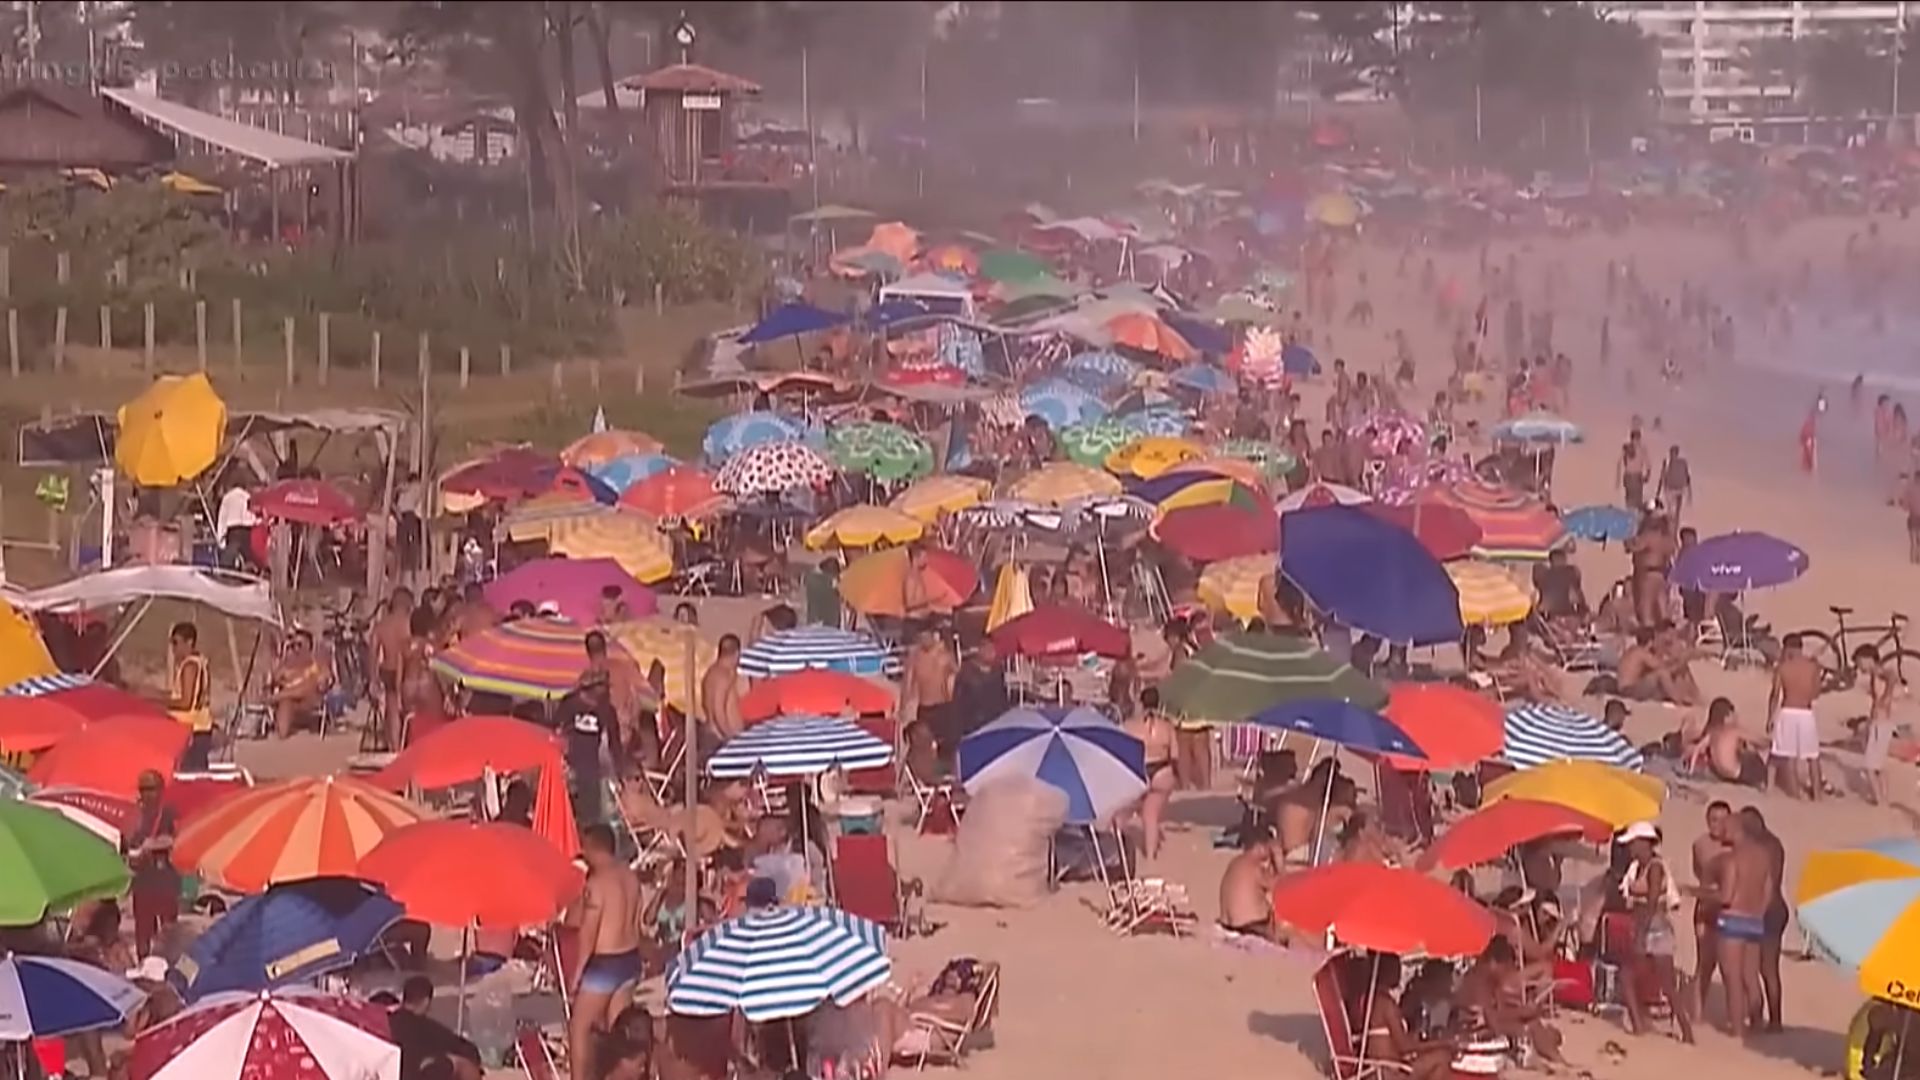 Ondas de calor no Rio de Janeiro ganharão nomes de pessoas; Lúcia, Mara, Bia, dentre outros